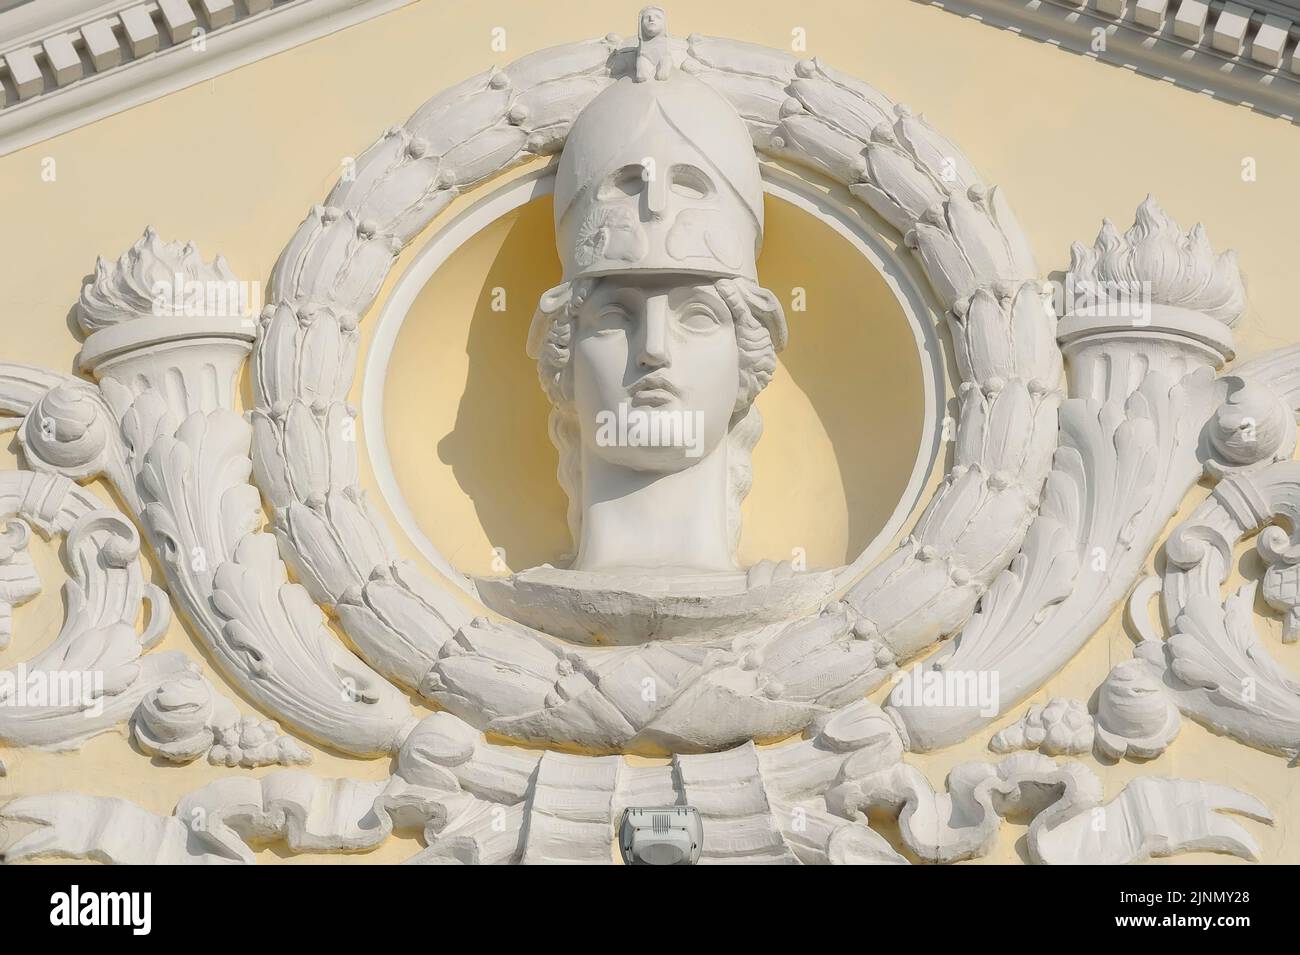 Maskaron von Pallas Athene, griechische Göttin der Weisheit, des Handwerks und der Kriegsführung an der Fassade eines alten Gebäudes in der Ukraine Kiew Stockfoto